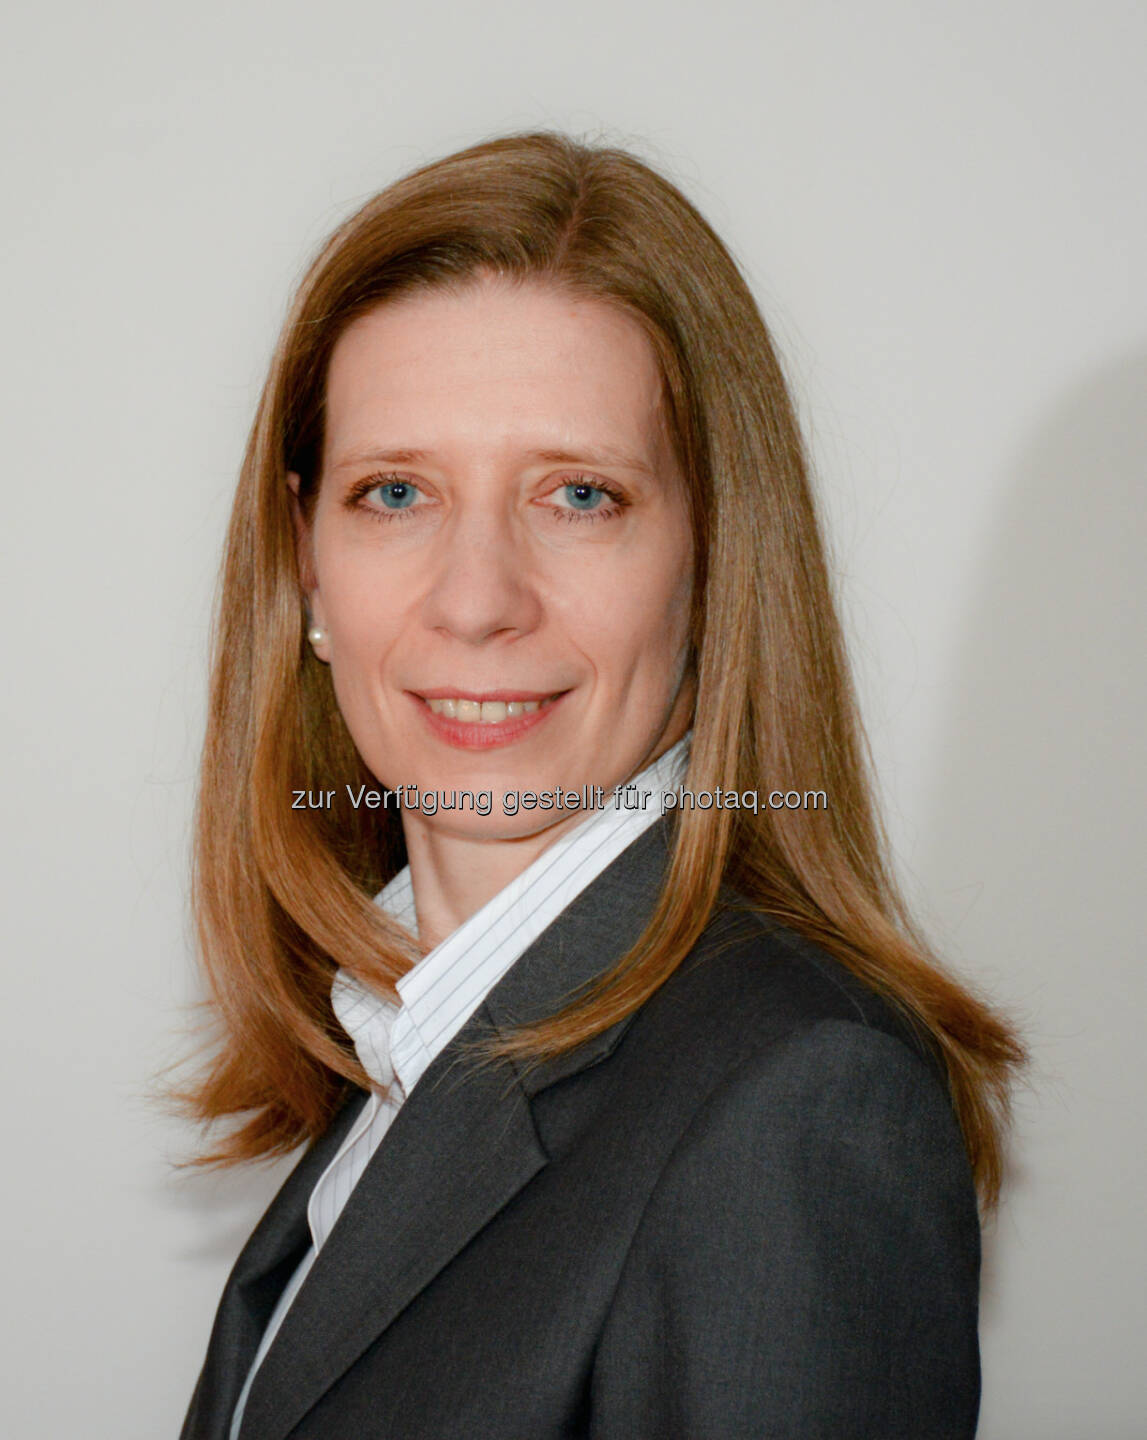 Christina Abrahamsberg rückt mit 1. Oktober in den Sanochemia-Vorstand auf